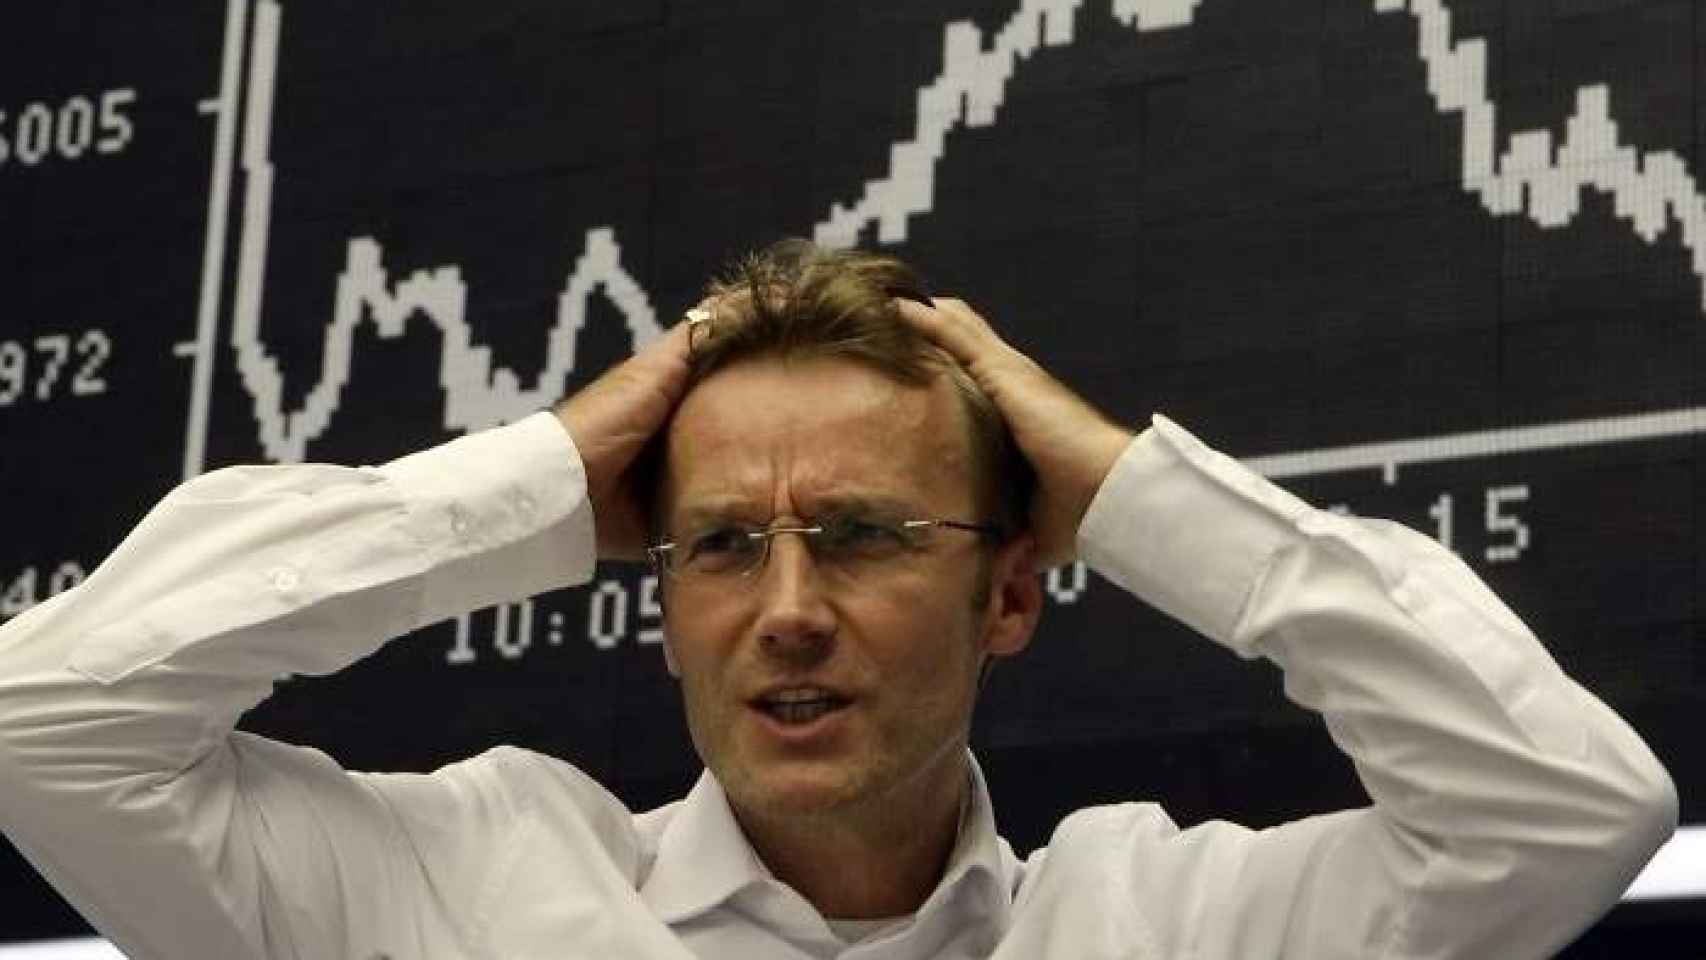 Un operador de Bolsa el día de la caída de Lehman Brothers.